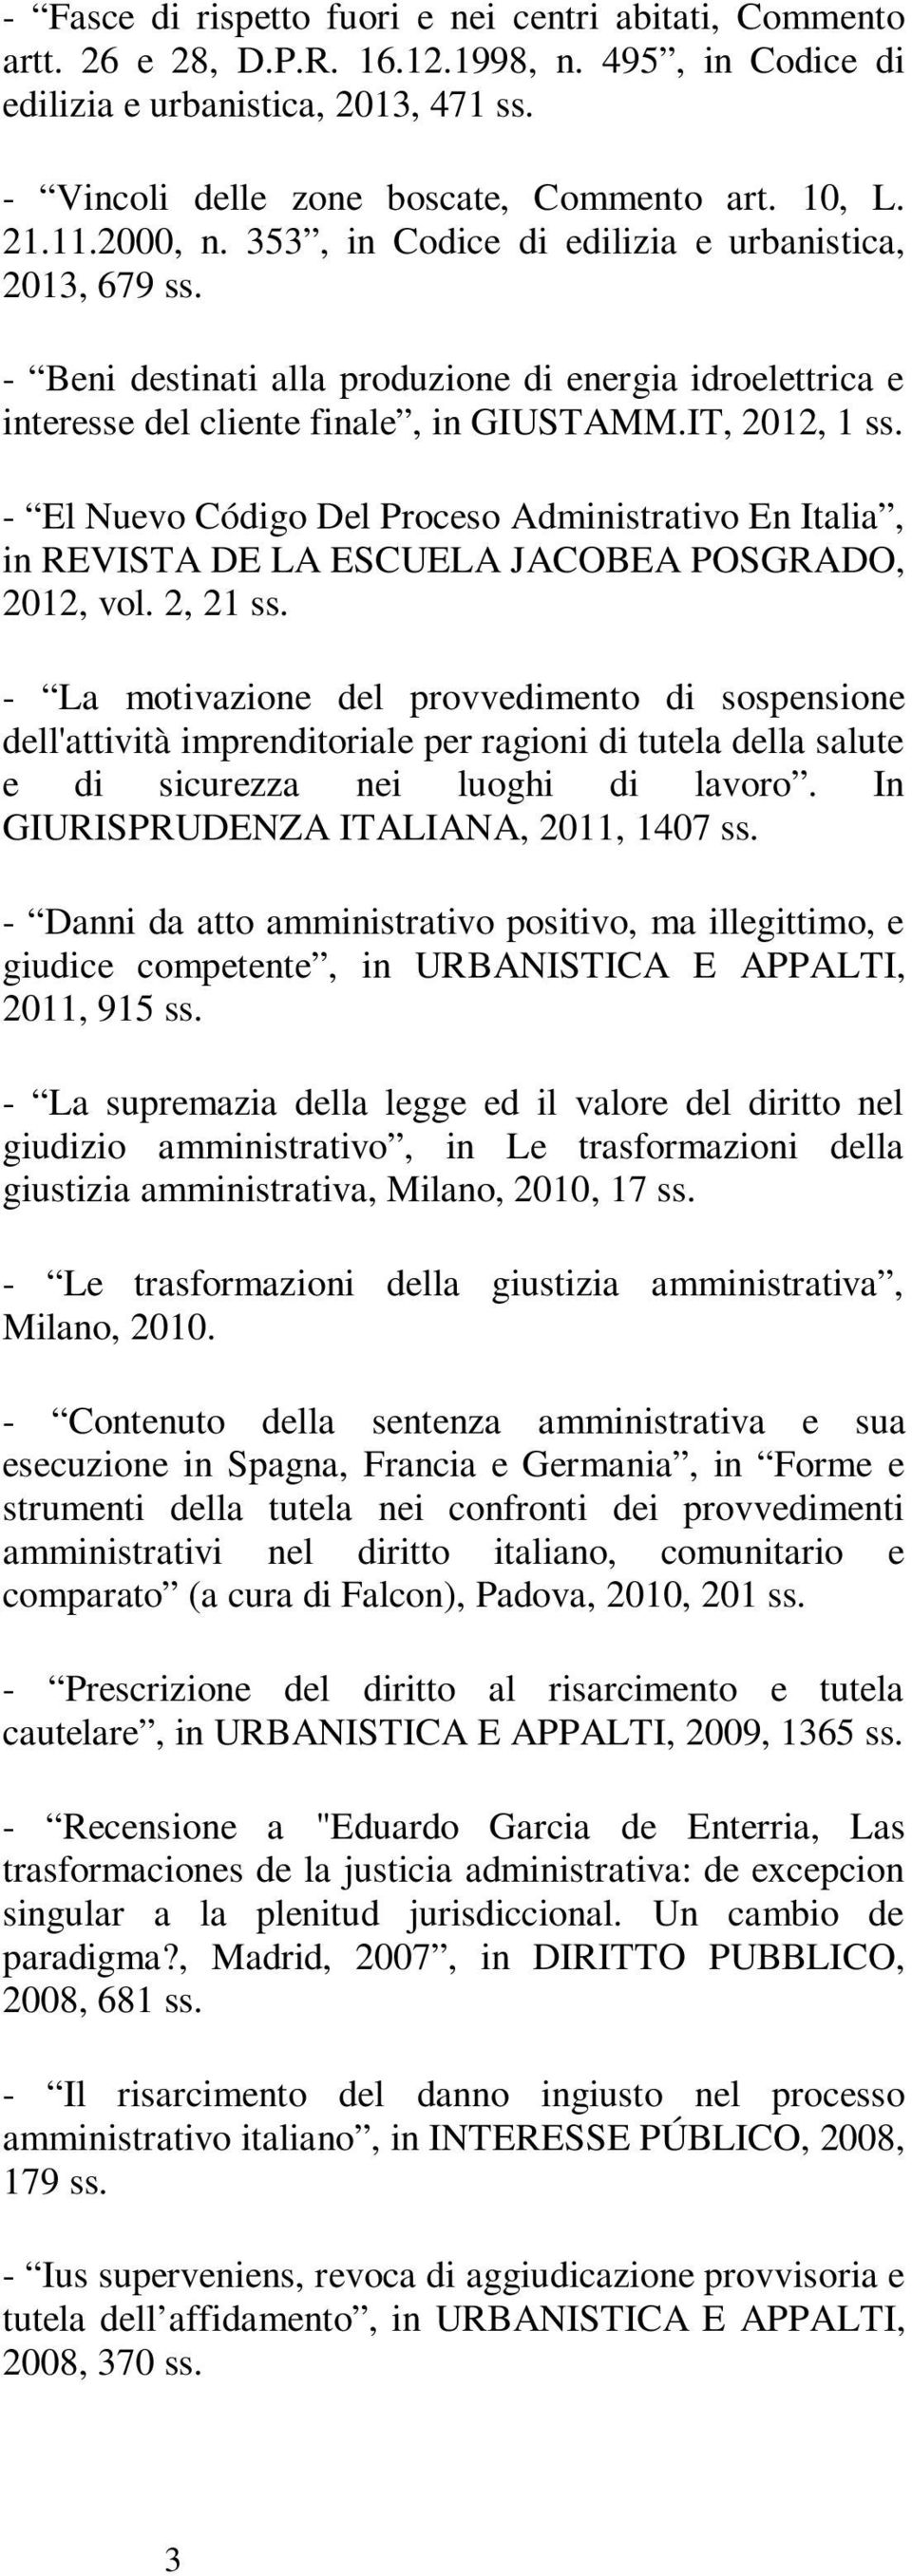 IT, 2012, 1 - El Nuevo Código Del Proceso Administrativo En Italia, in REVISTA DE LA ESCUELA JACOBEA POSGRADO, 2012, vol.